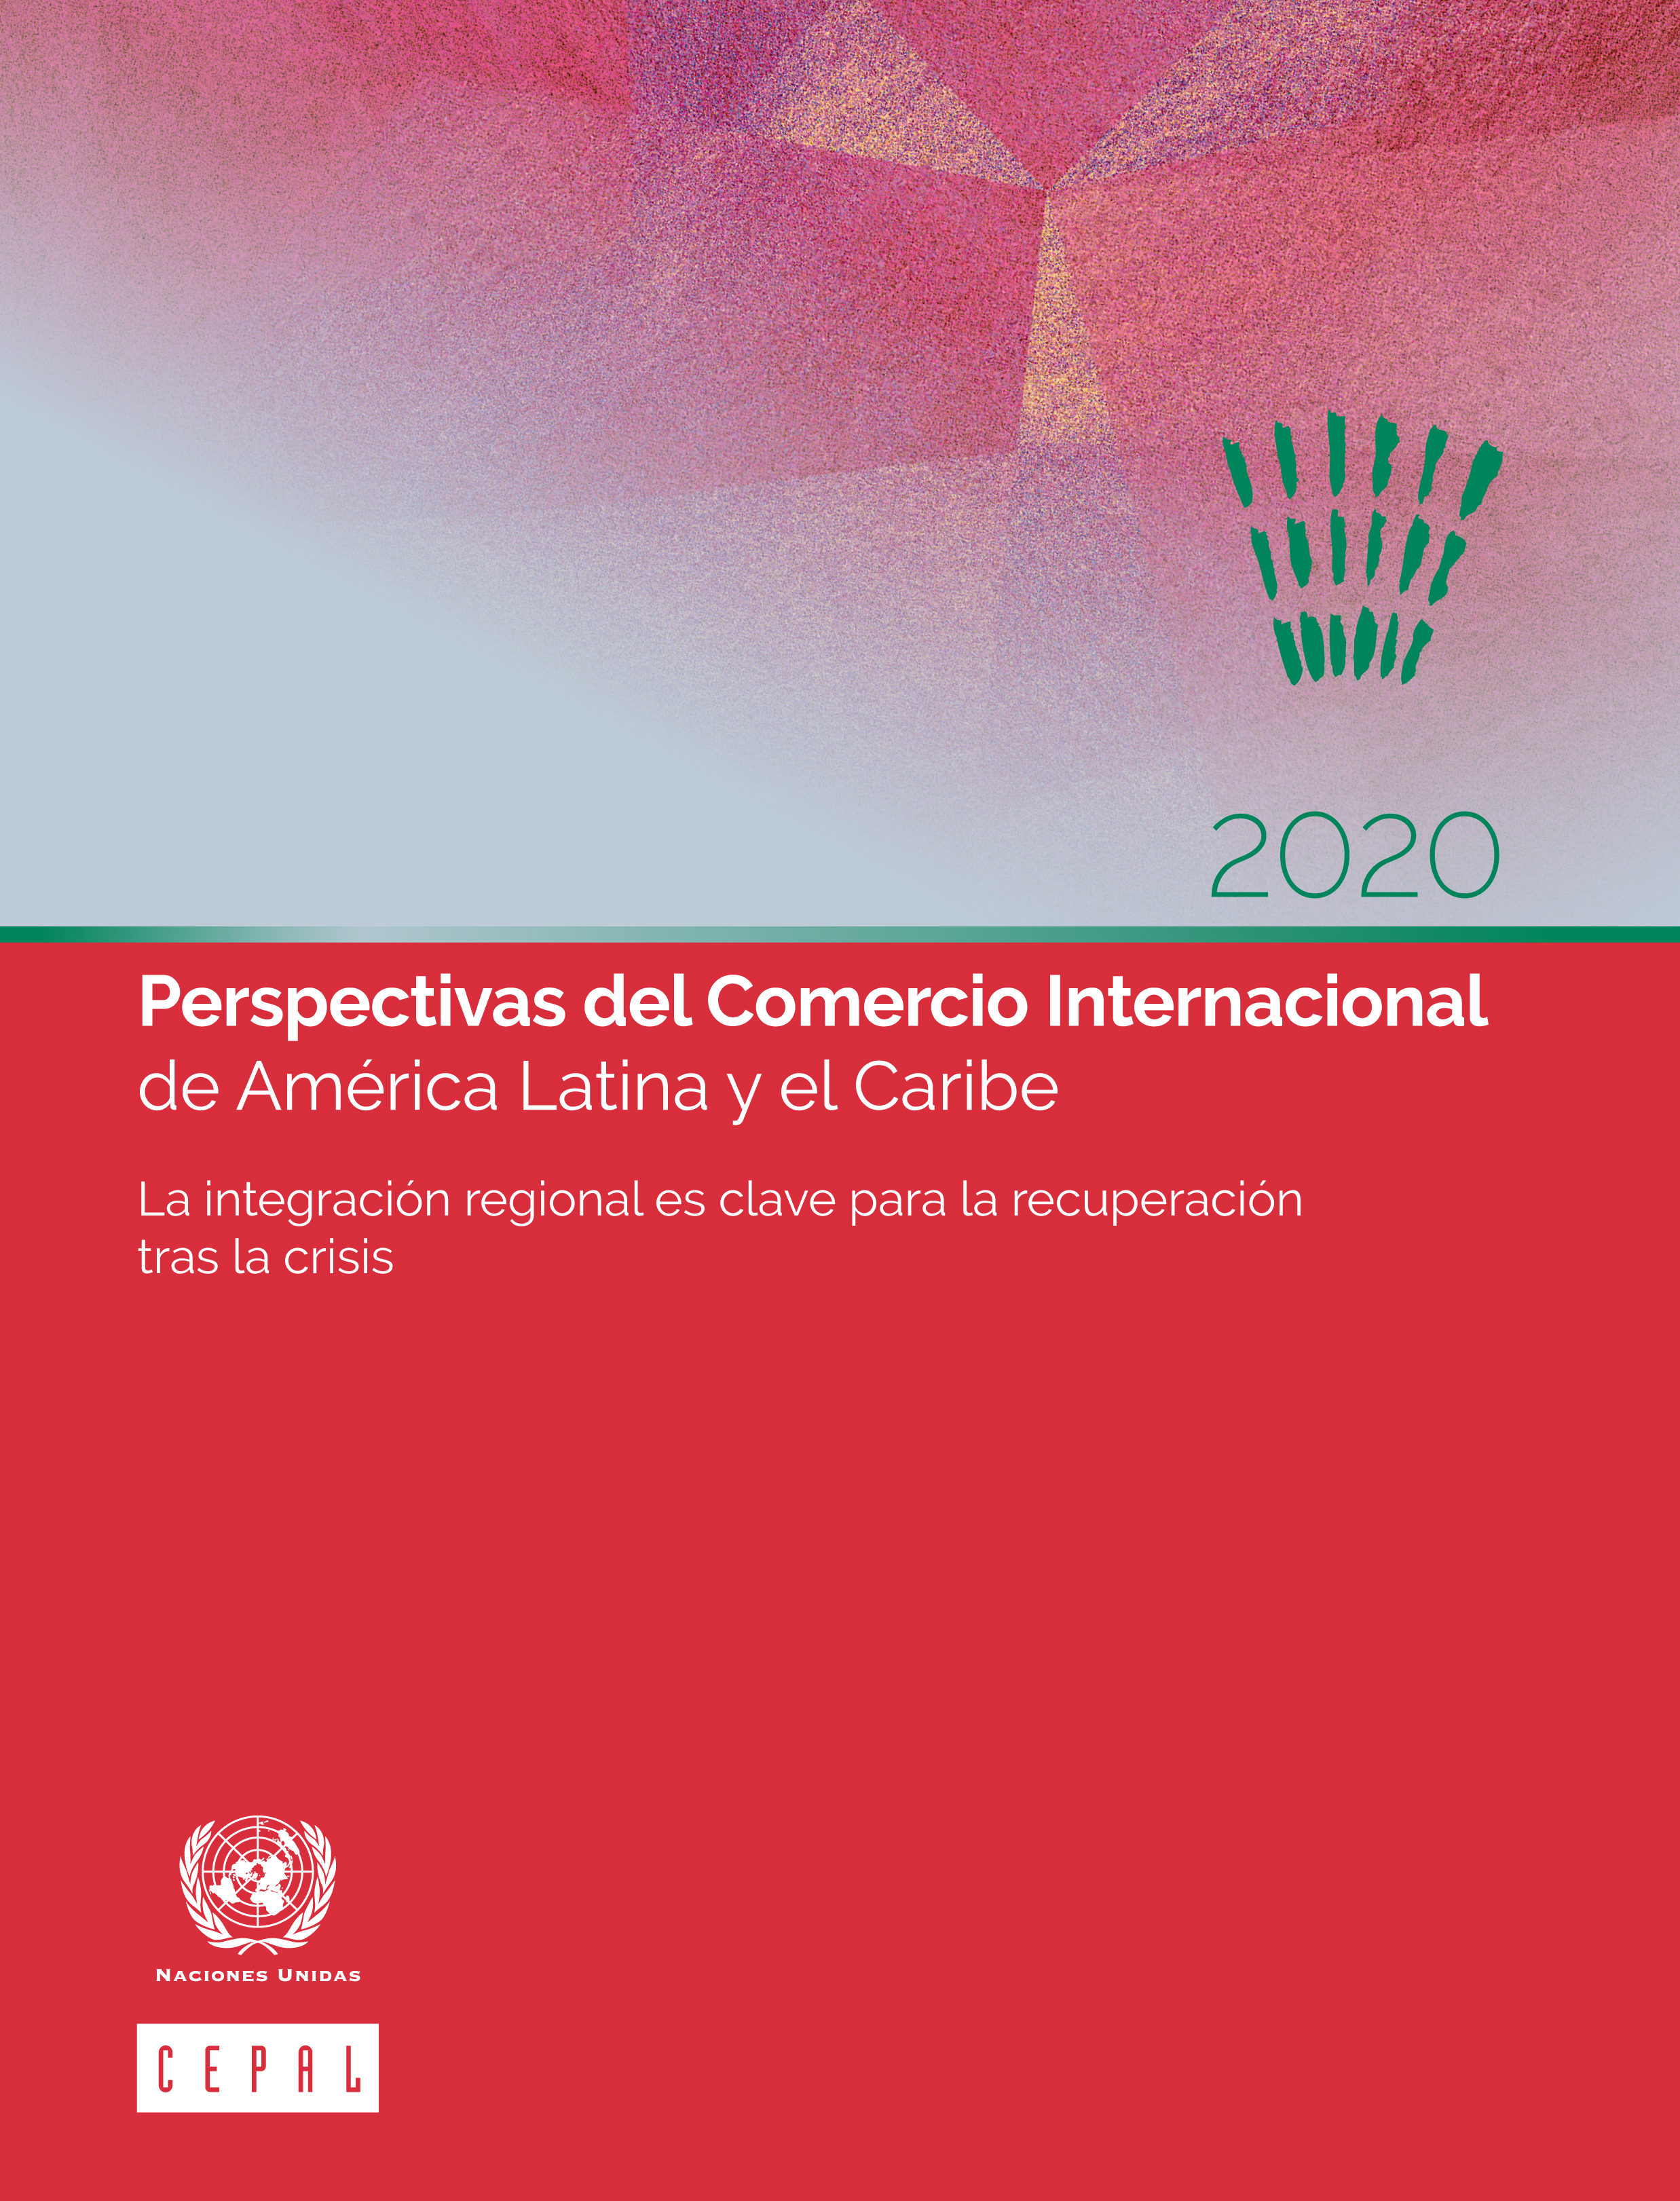 image of Perspectivas del Comercio Internacional de América Latina y el Caribe 2020